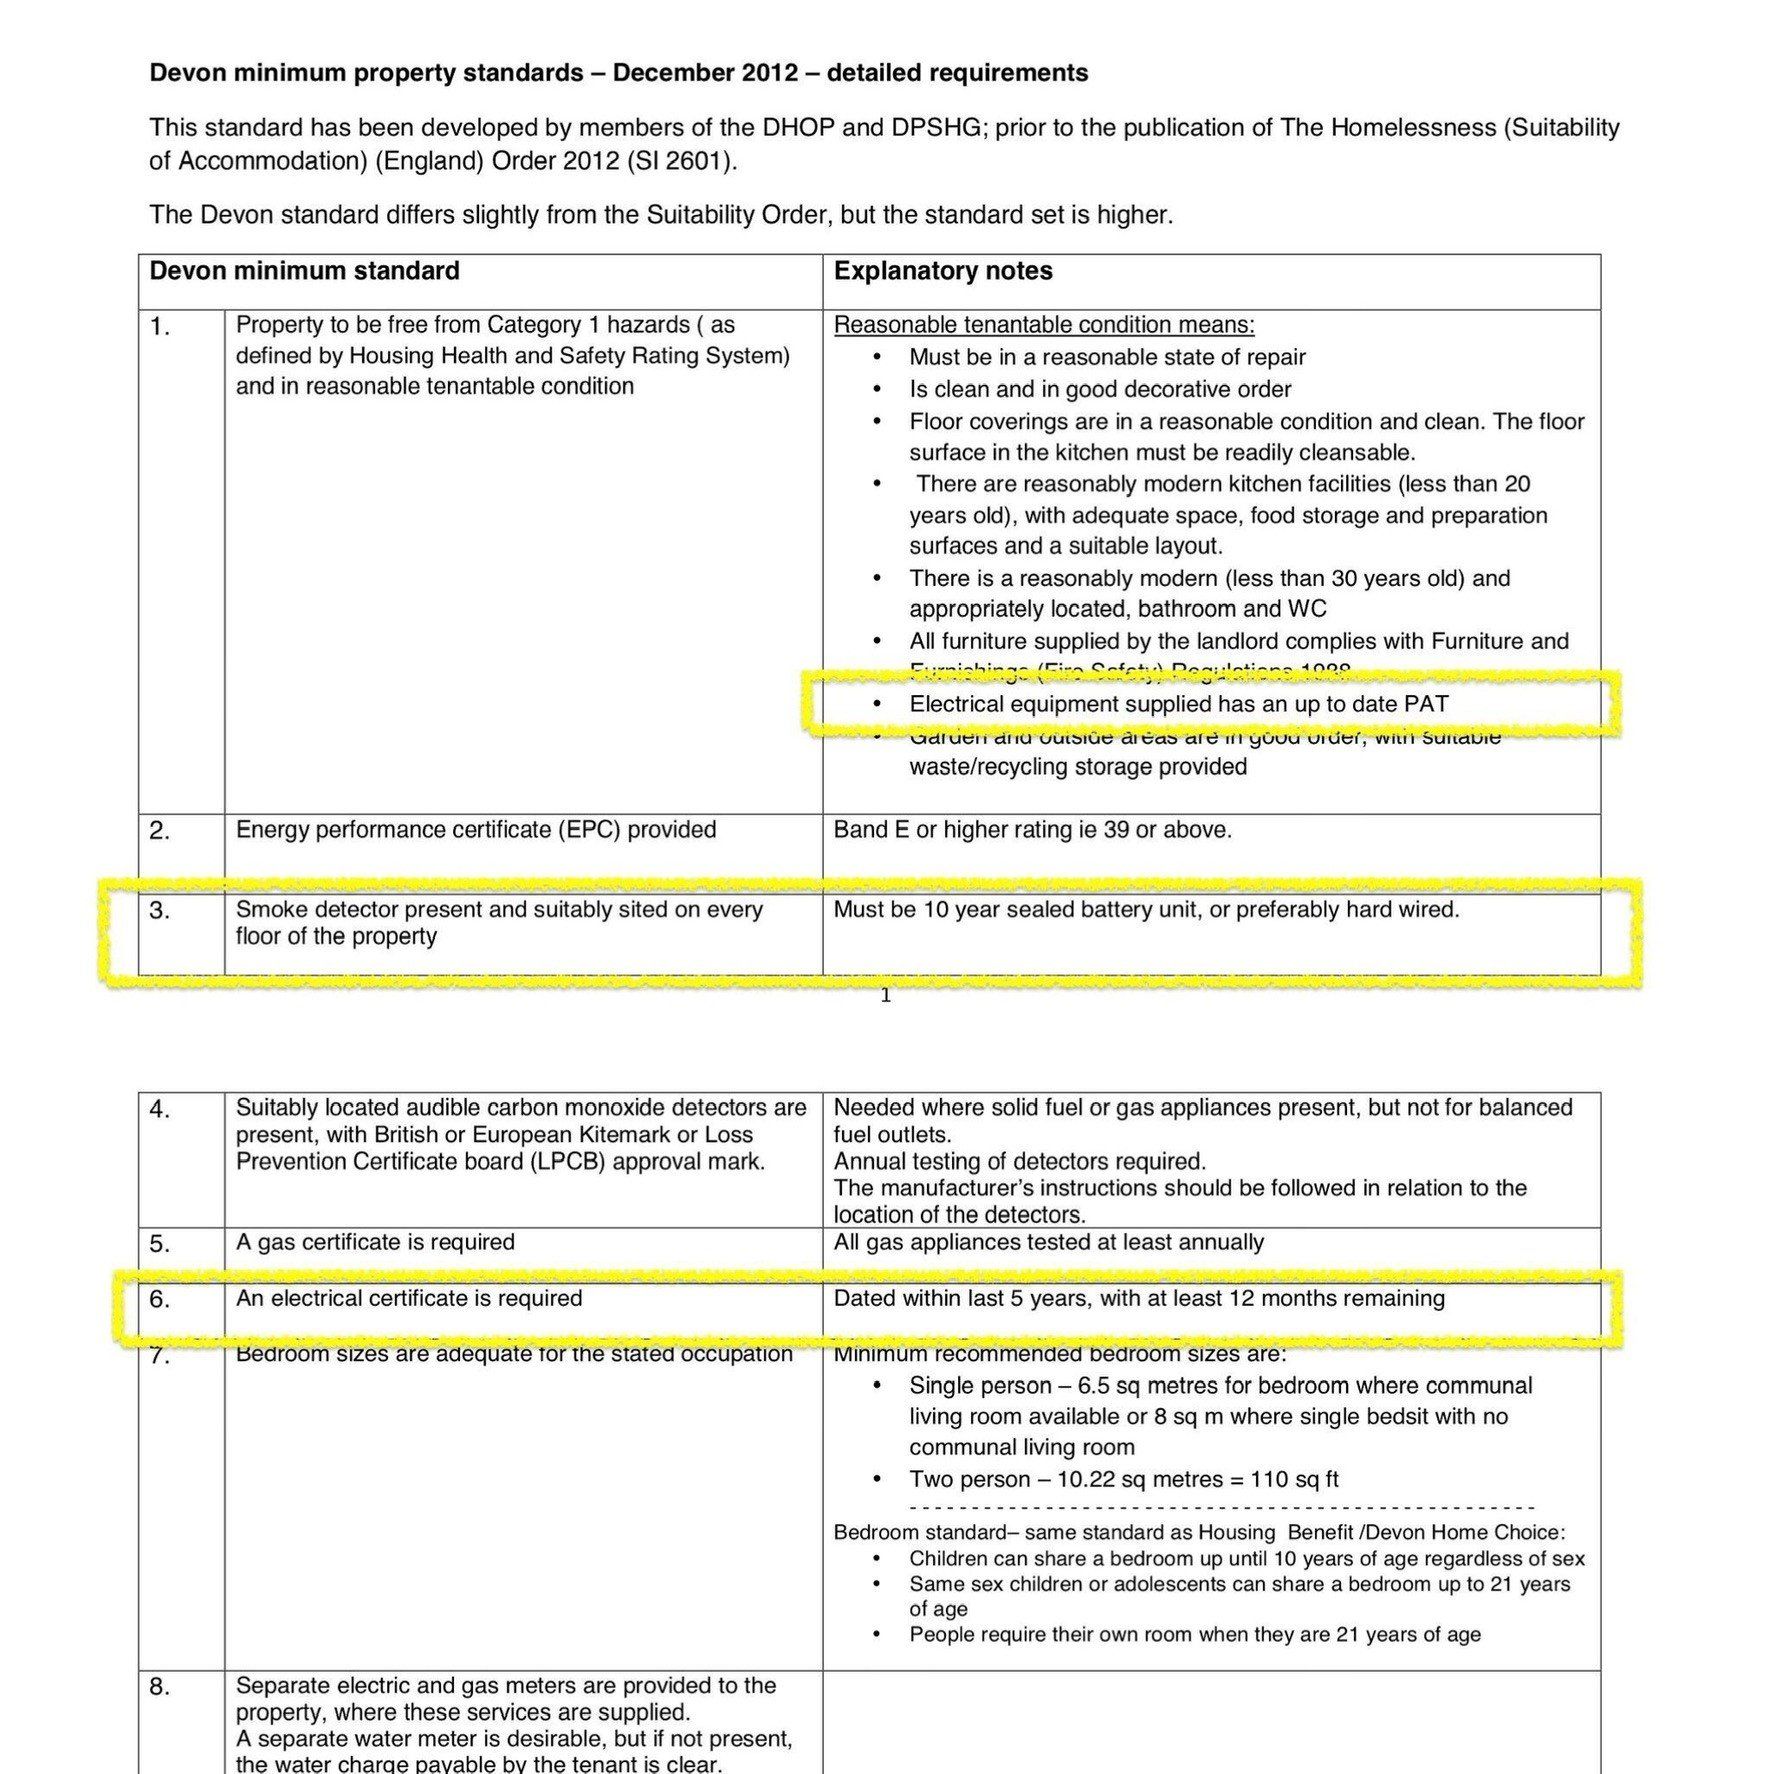 Devon minimum property standards - December 2012 - detailed requirements